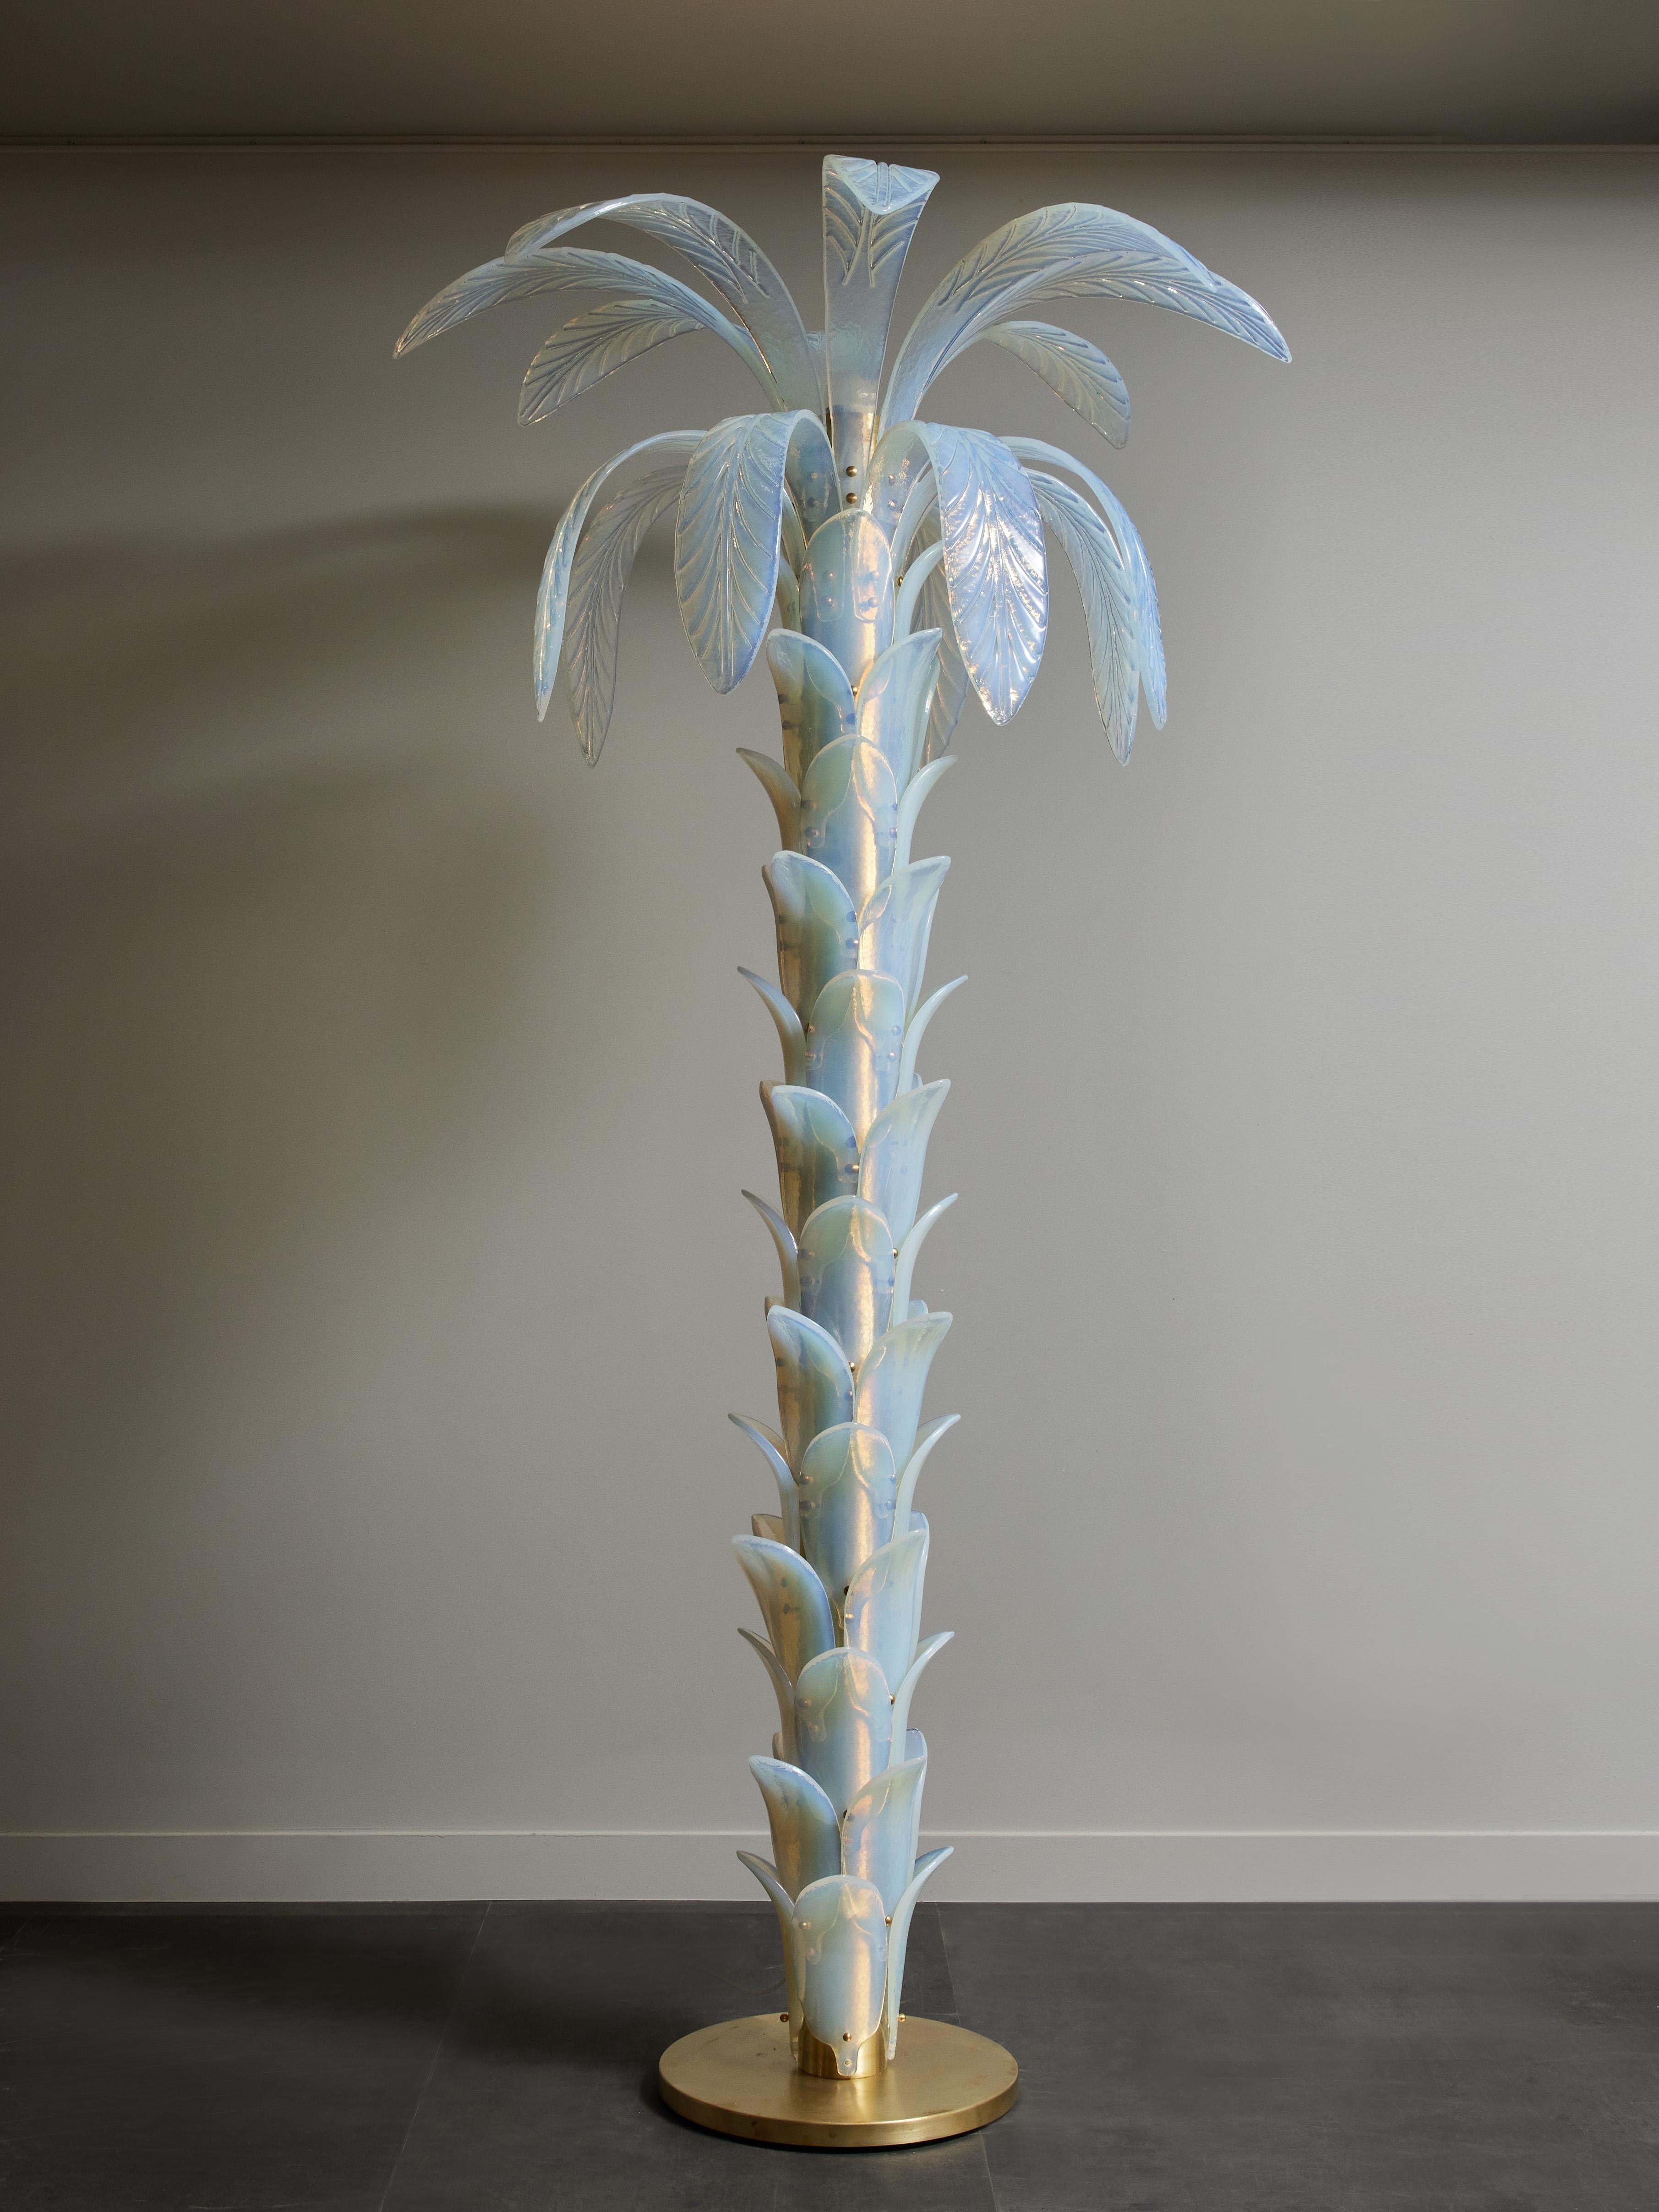 Hohe Stehlampe in Form einer Palme, bestehend aus einem runden Sockel und Stamm aus Messing, bedeckt mit schillernden Blättern aus Murano-Glas bis zur Spitze, wo große Blätter aus dem Stamm hervorbrechen.
Eine Lichtquelle an der Spitze.
 